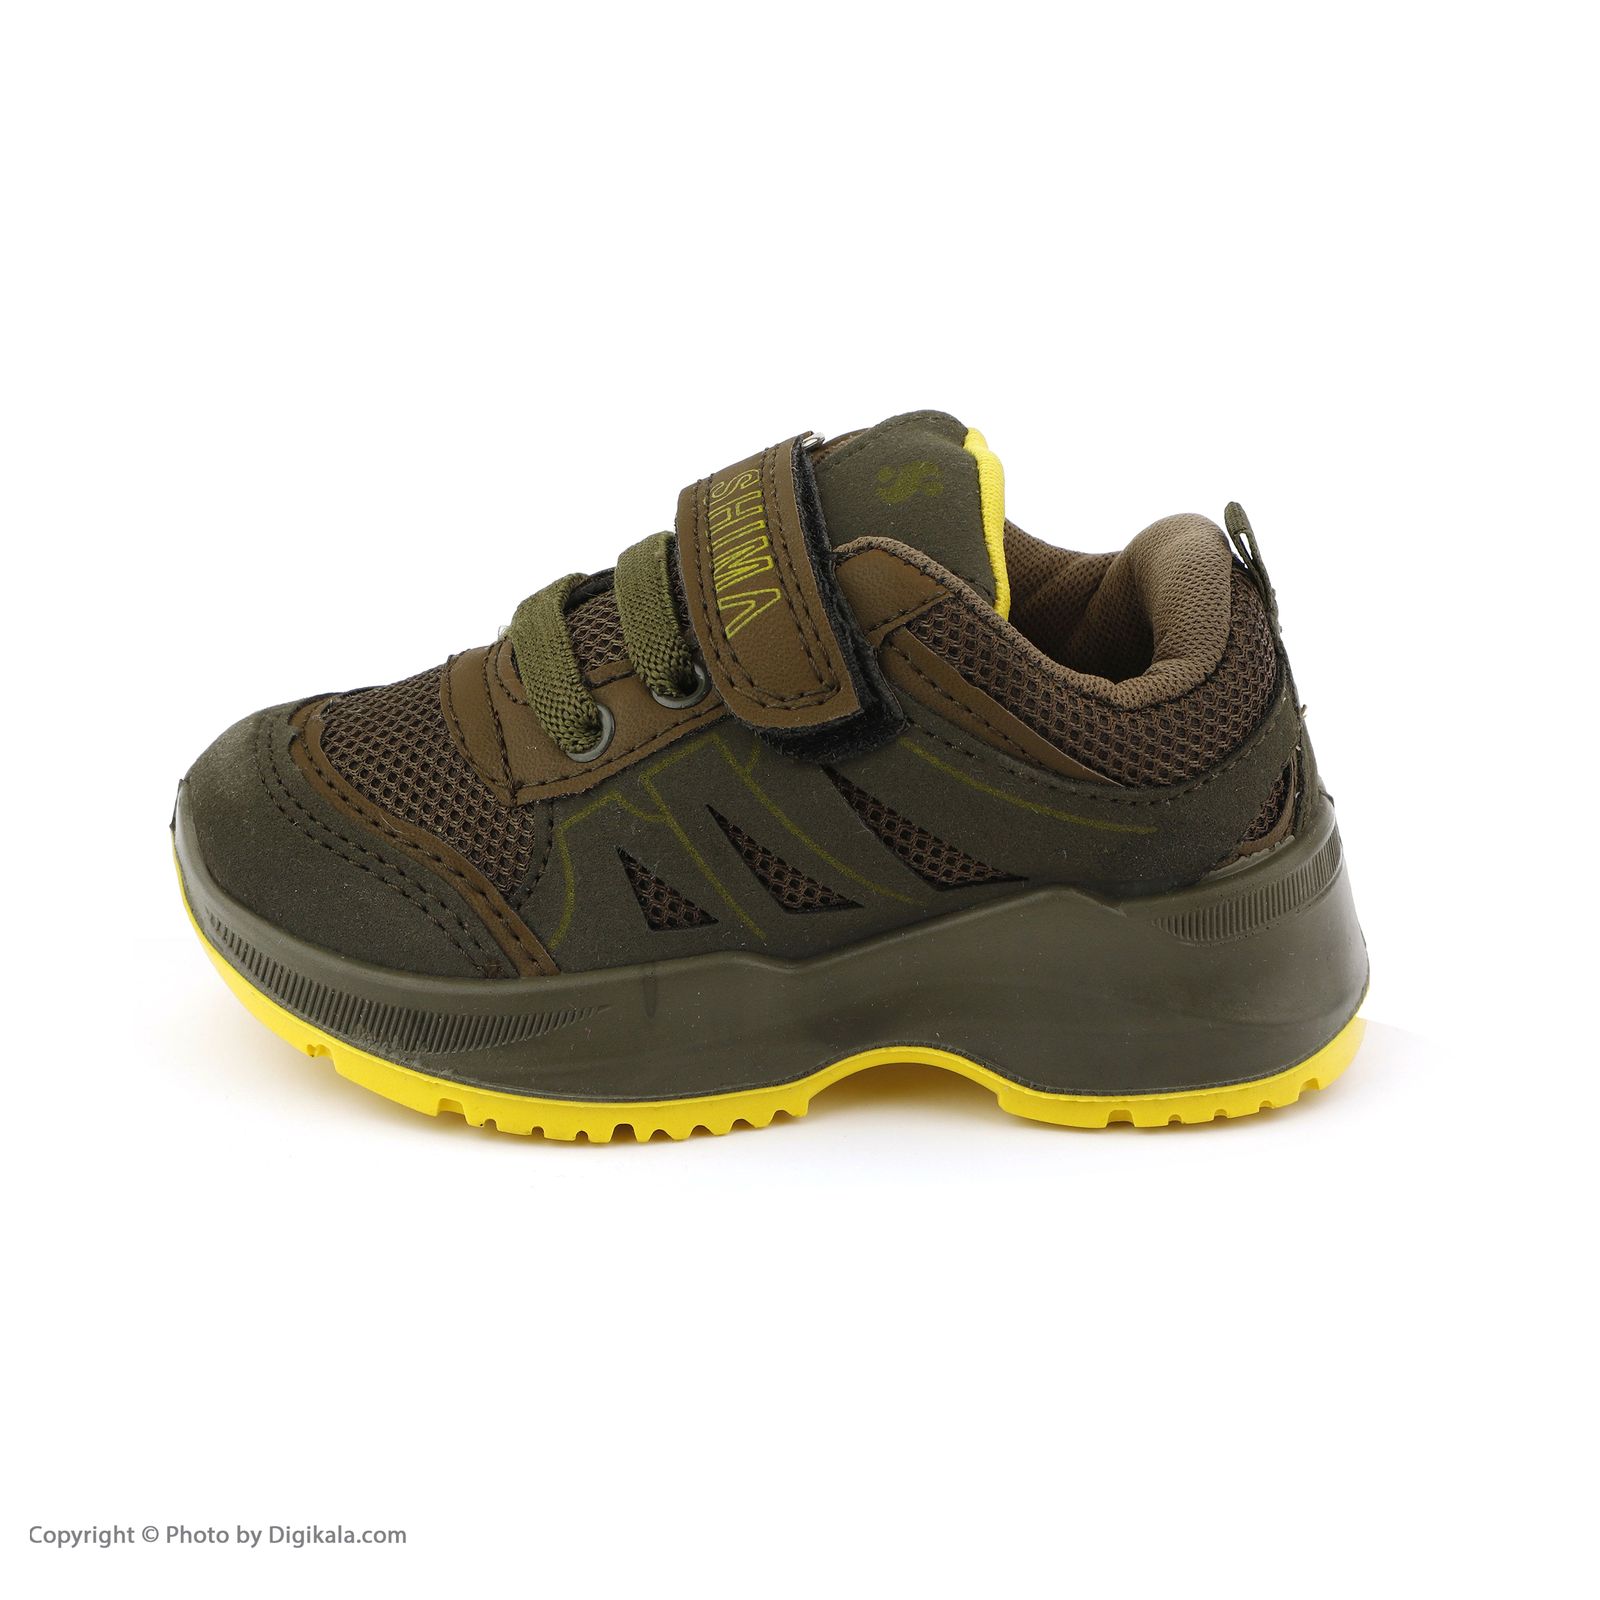  کفش مخصوص پیاده روی بچگانه شیما مدل 32662-36 -  - 2